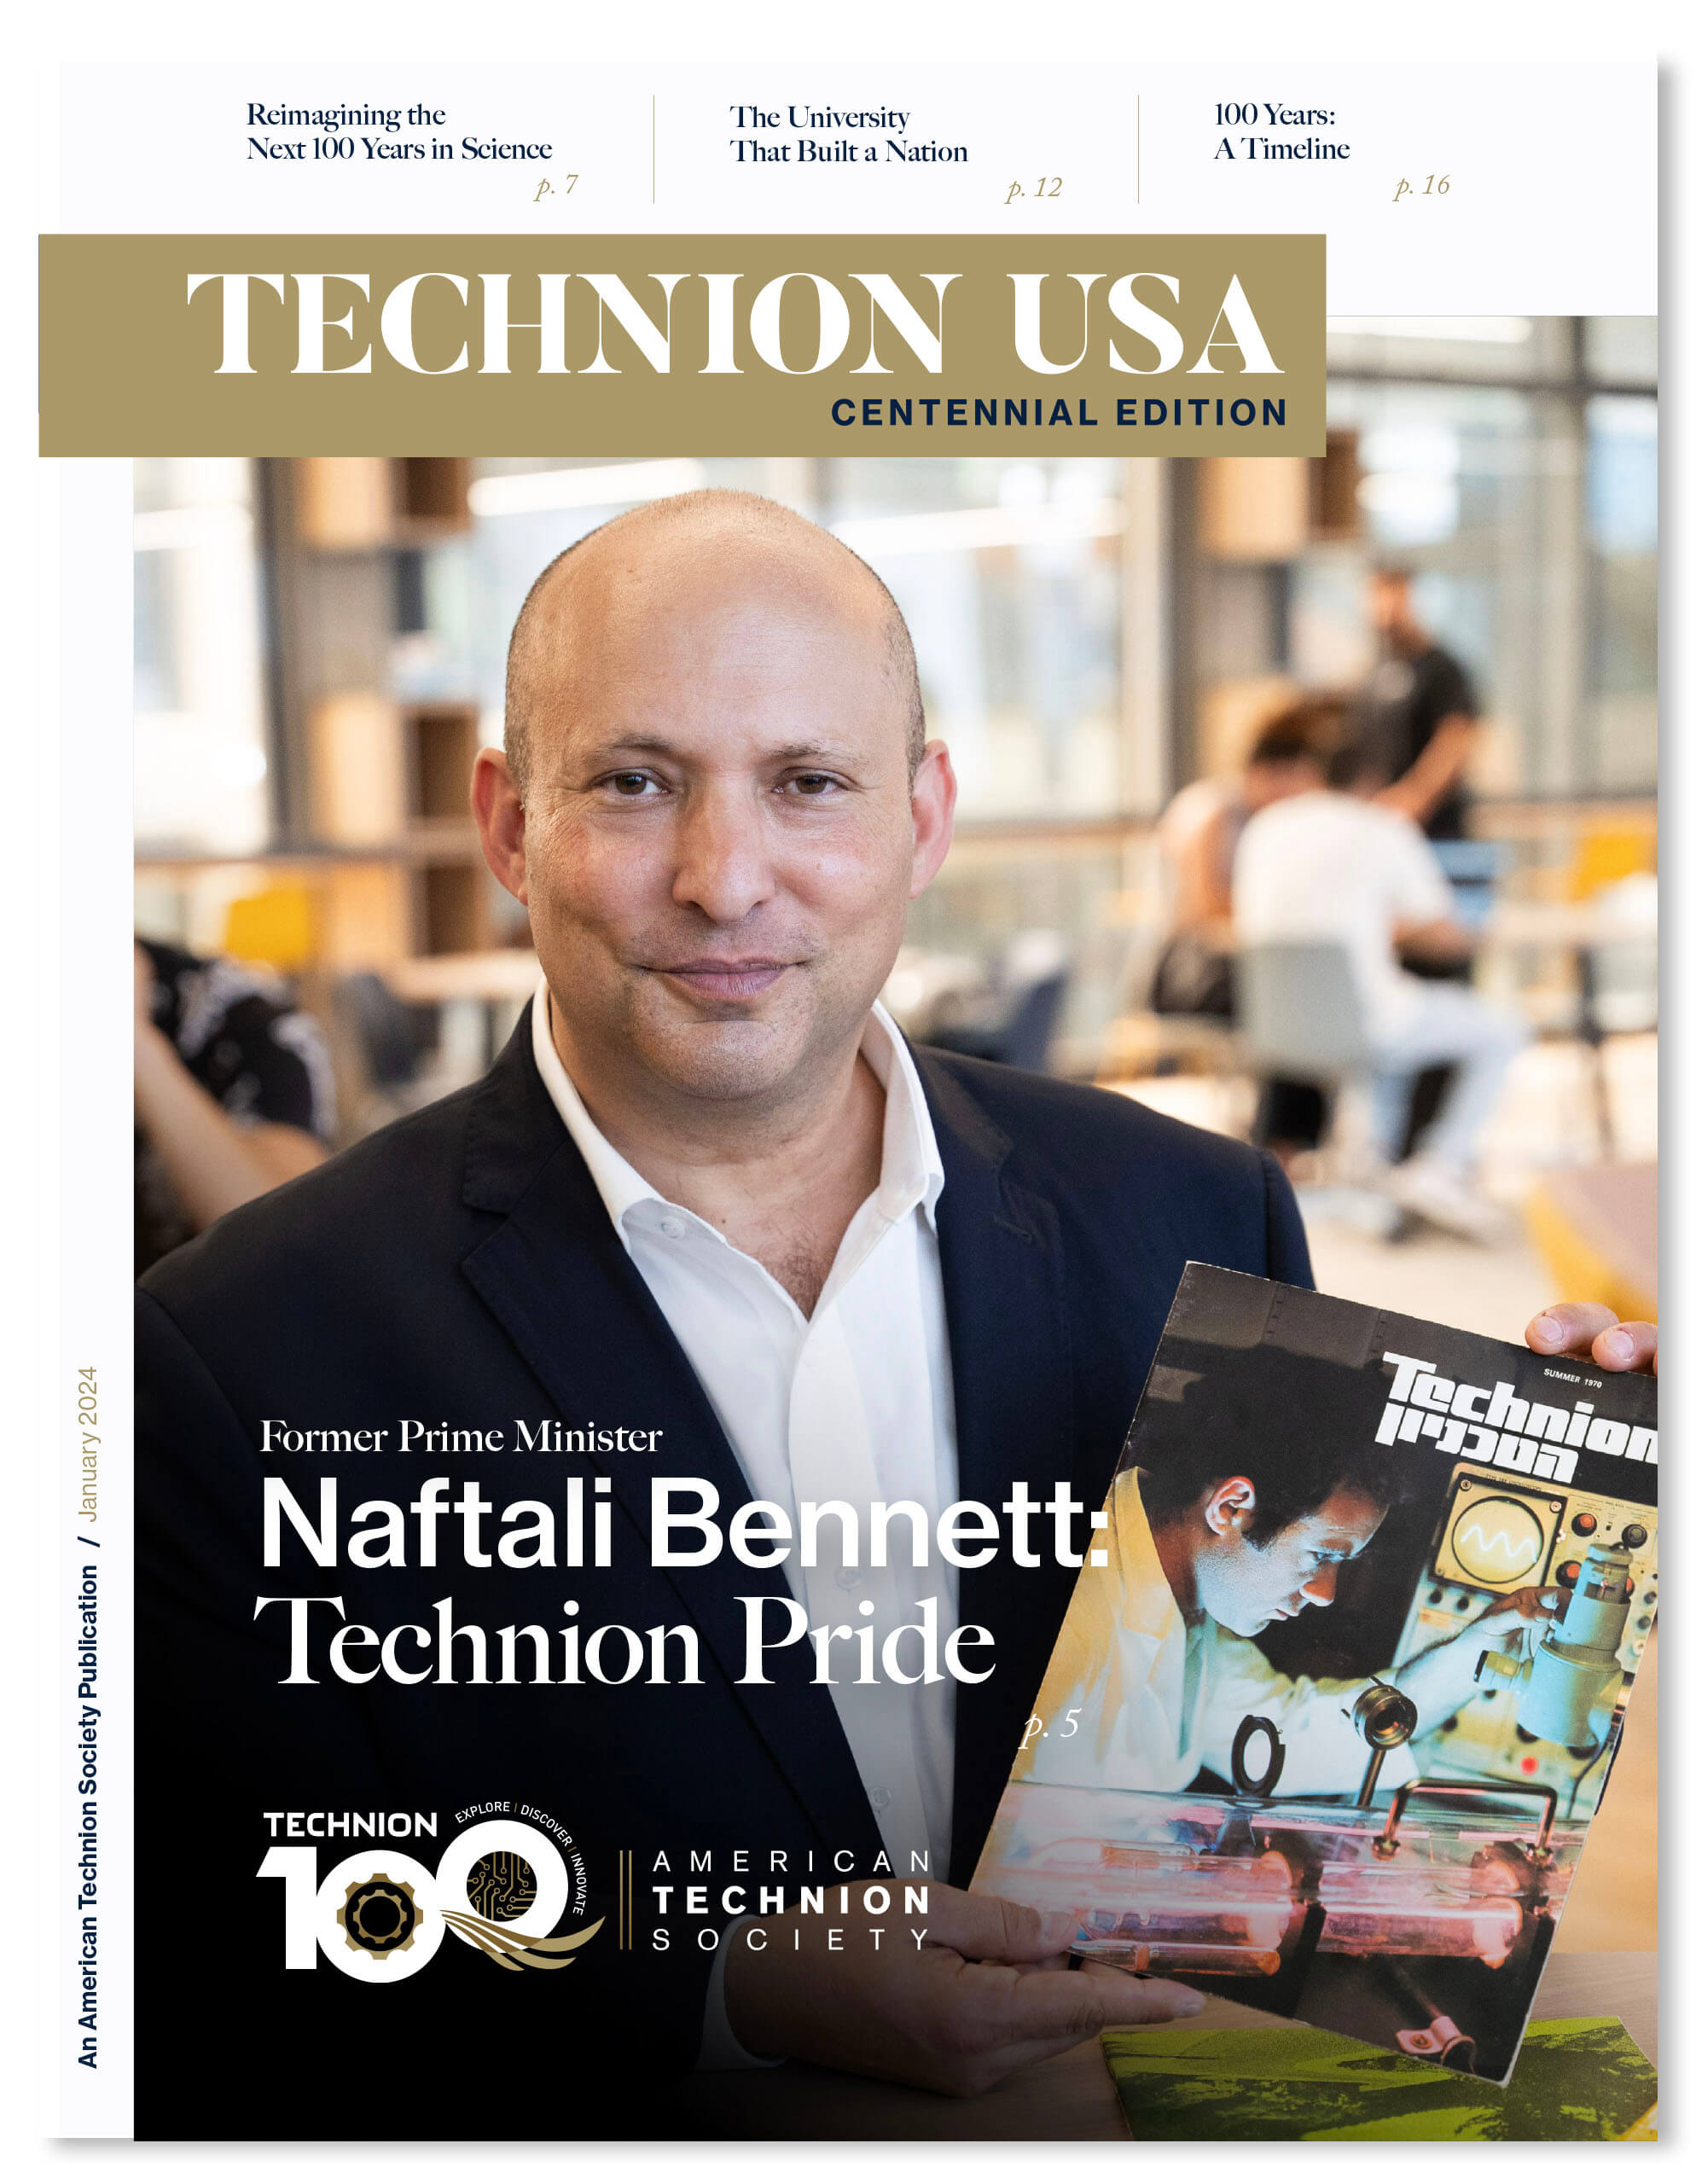 Technion USA Centennial edition cover art